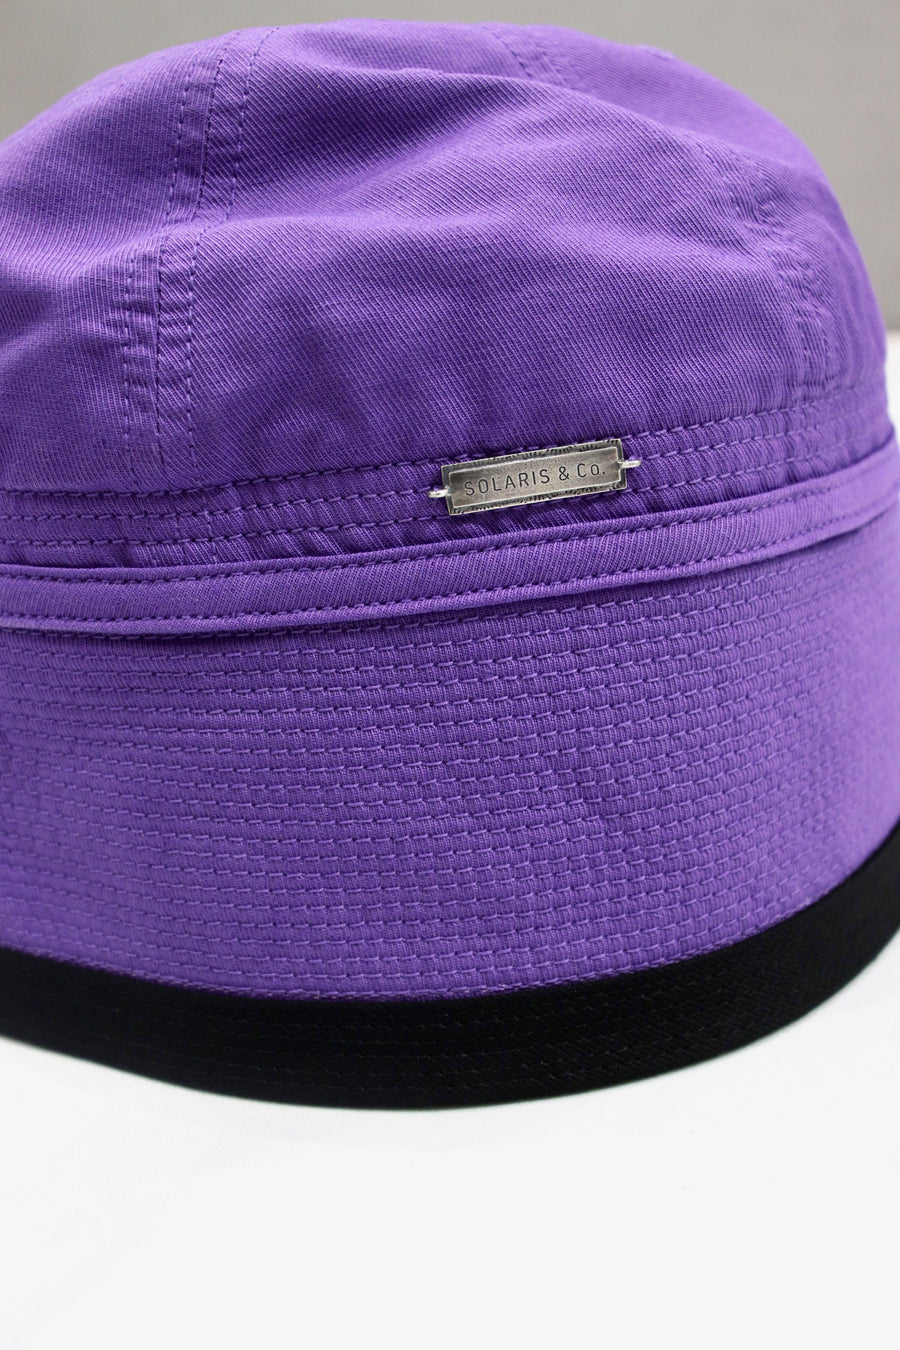 SOLARIS's Sailor Hat “SHEPHERD” Purple mail order ｜ Palette Art